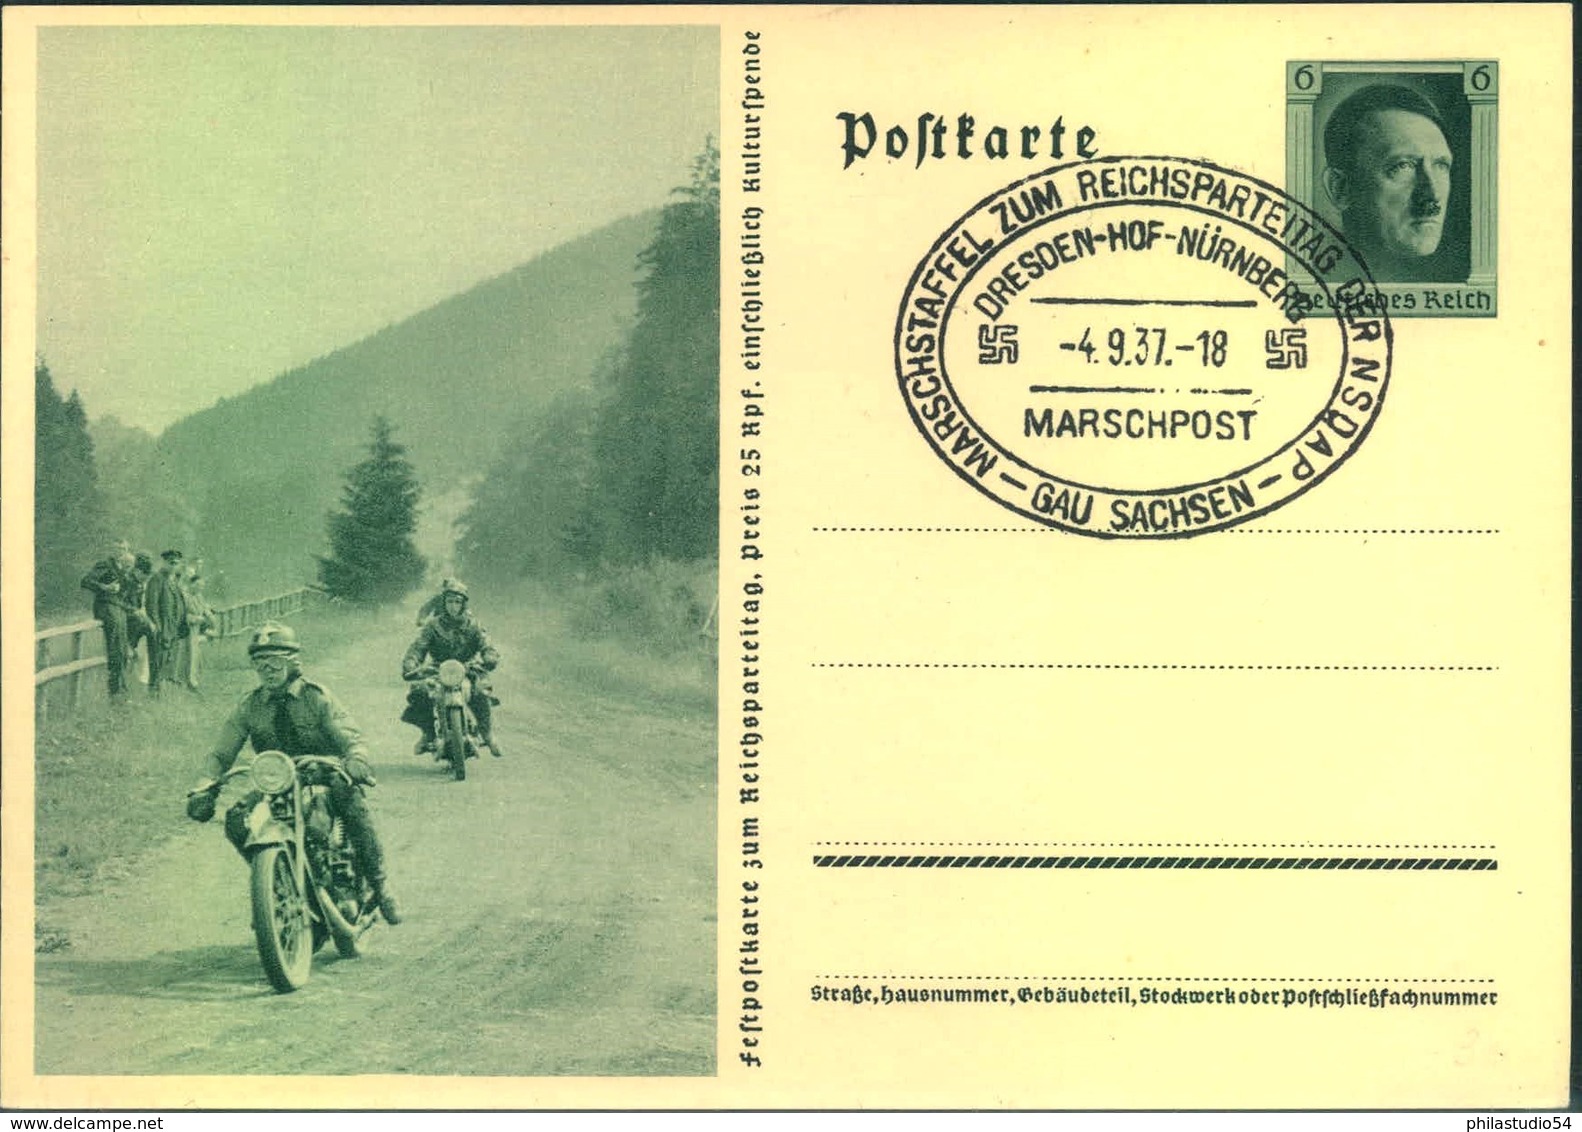 1937, MARSCHSTAFFEL ZUM REICHSPARTEITAG DRESDEN-HOF-NÜRNBERG - Maschinenstempel (EMA)